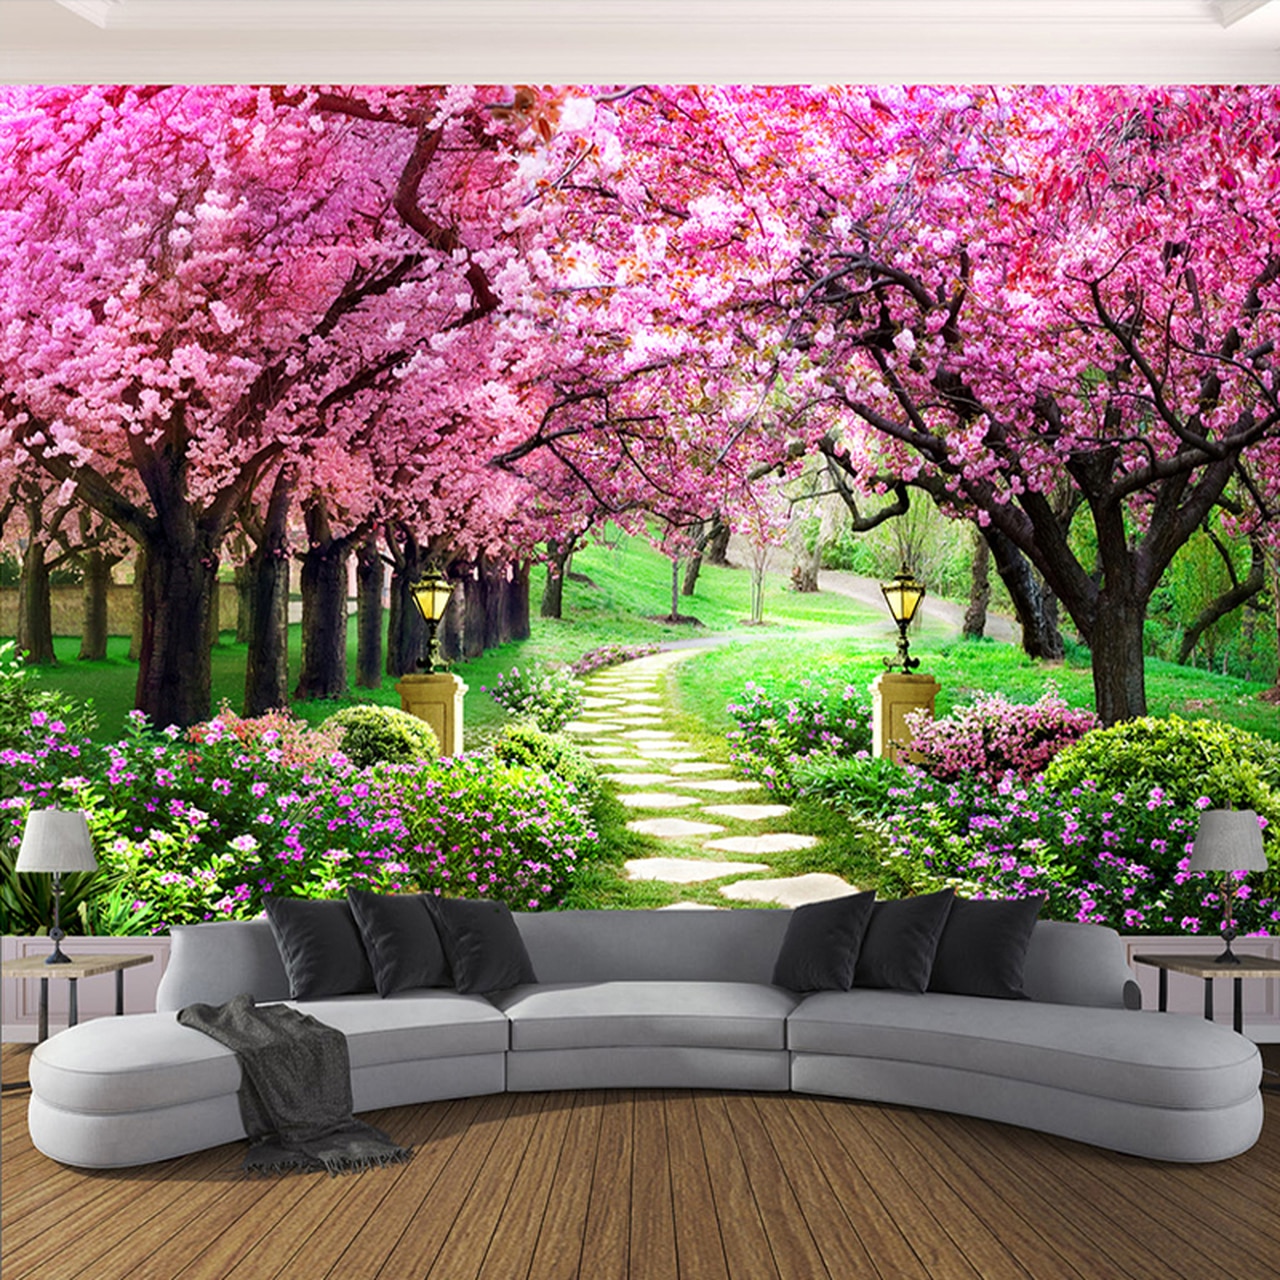 flower wallpaper for bedroom,nature,mural,blossom,flower,spring